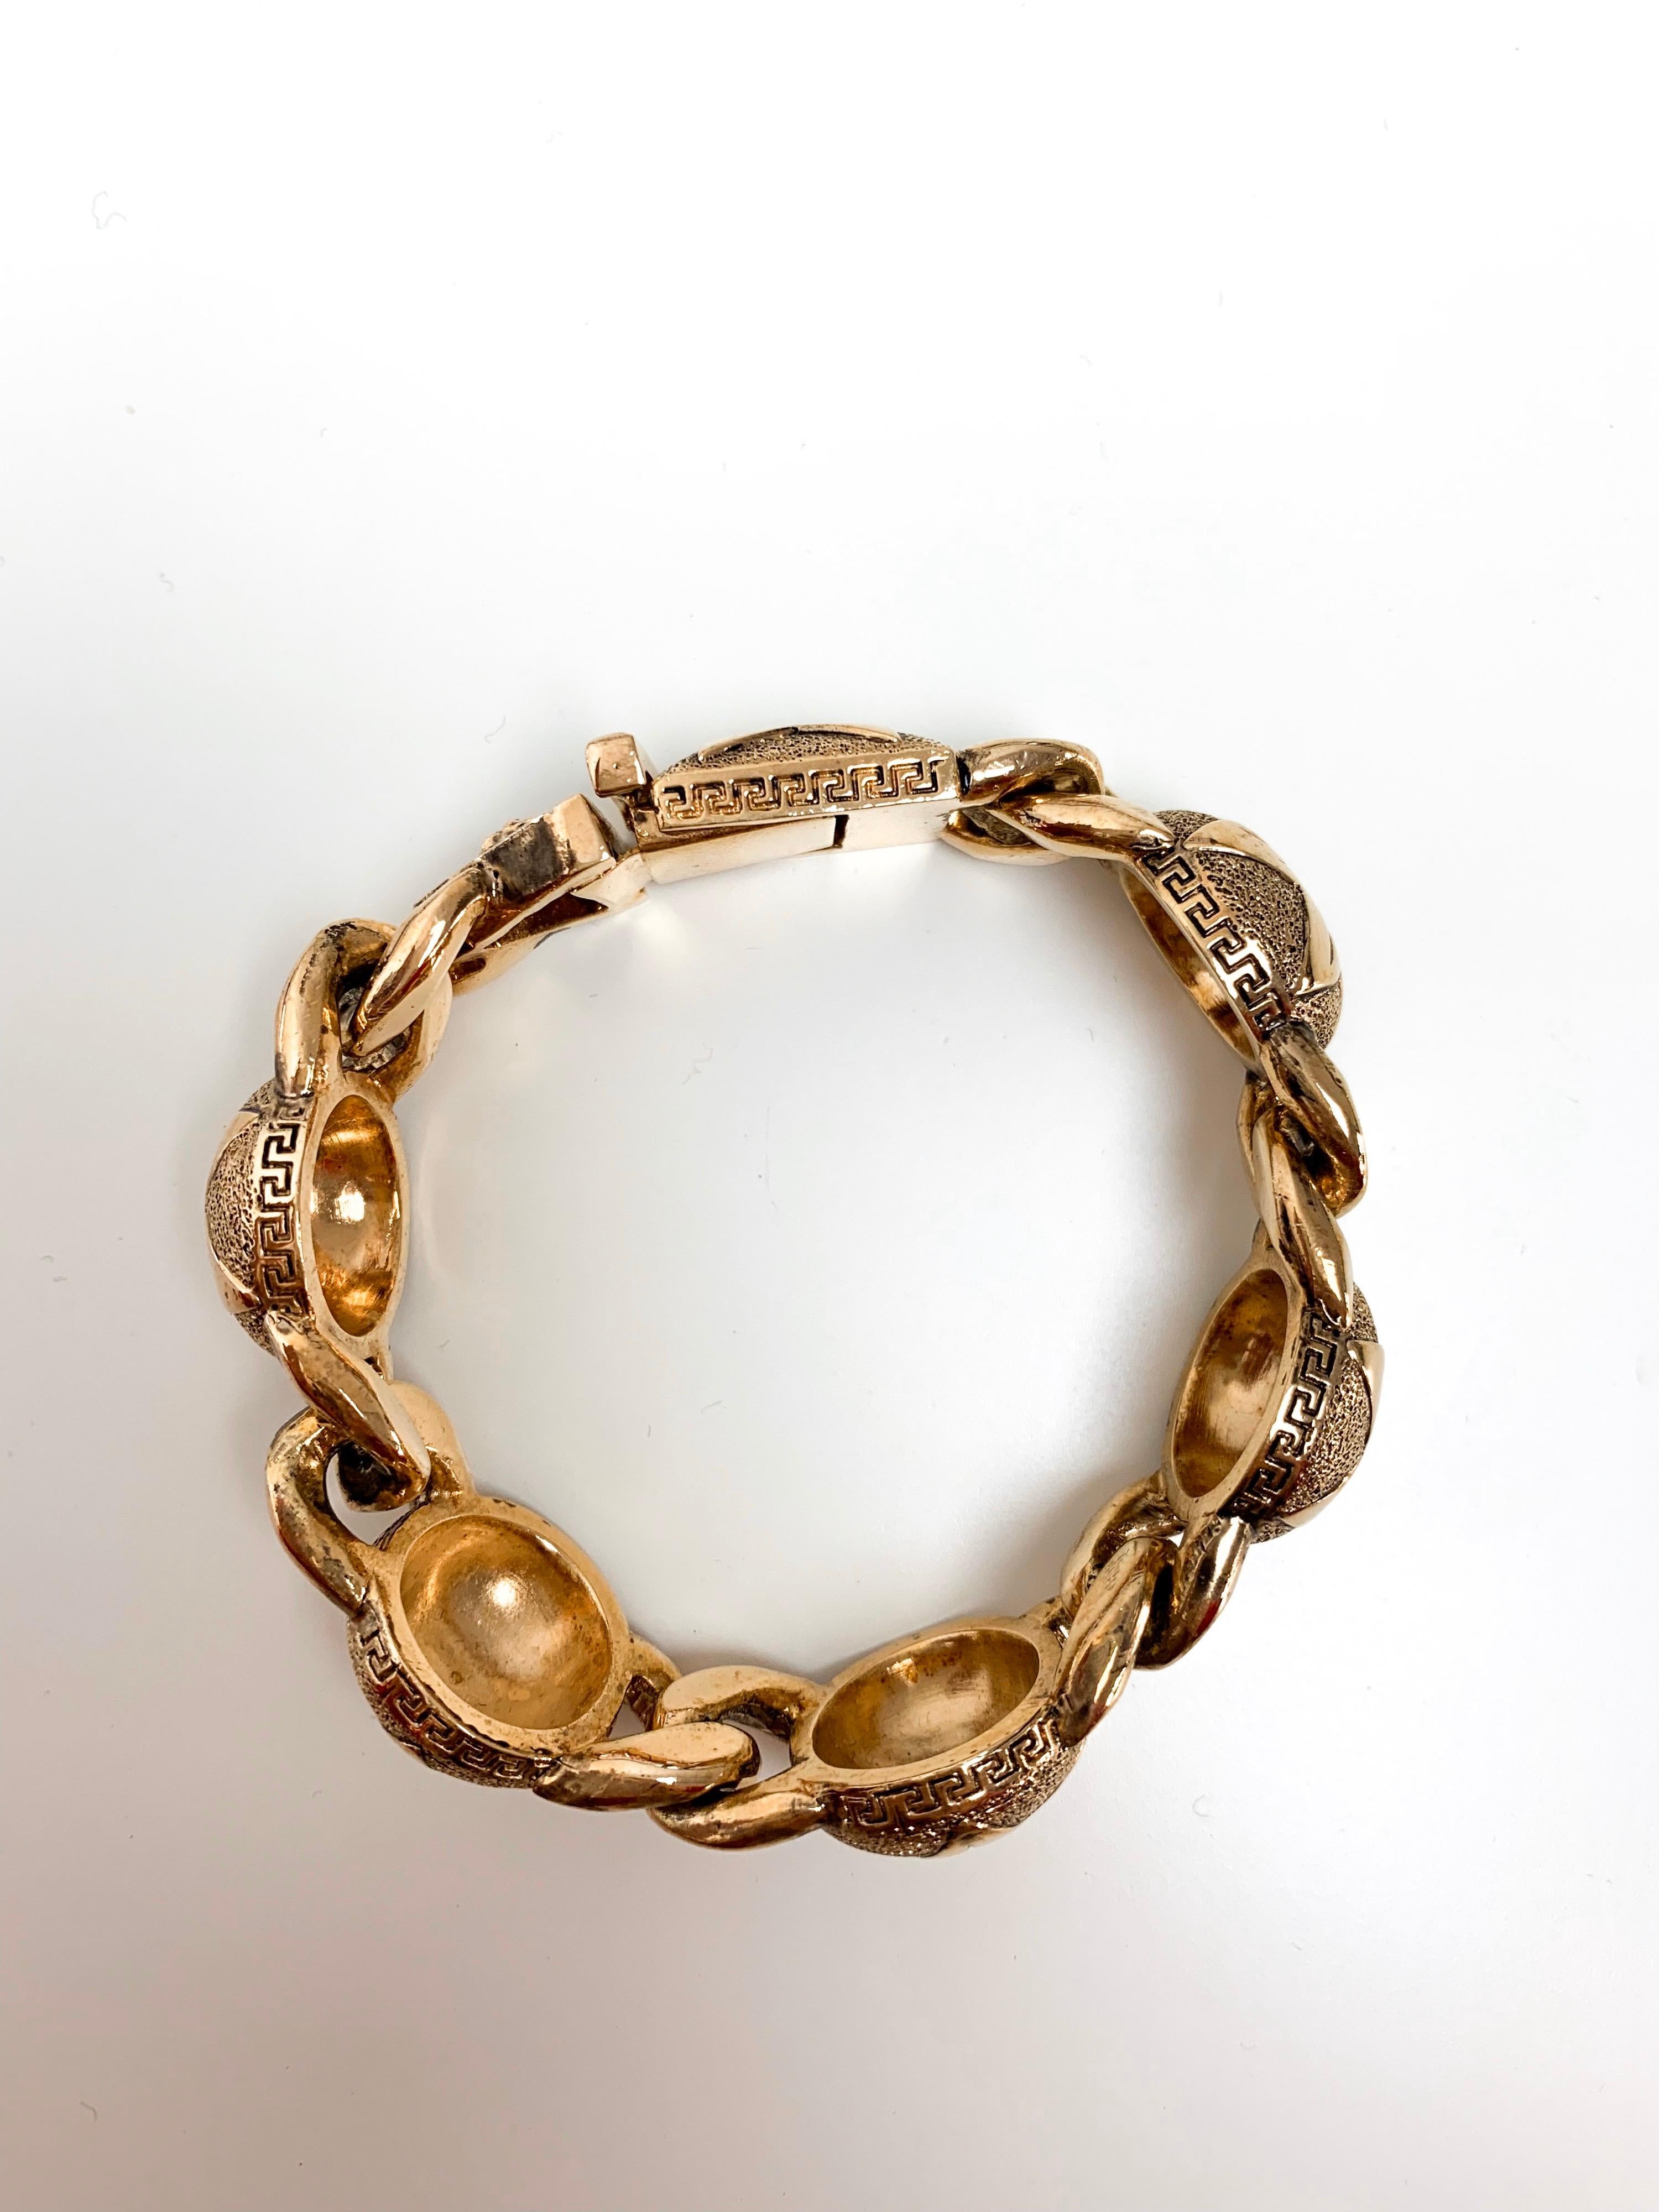 Fabriqué en Italie, ce bracelet en or de Gianni Versace présente cinq motifs circulaires avec l'emblème de l'étoile gravée, reliés par la traditionnelle boucle. Fini avec le symbole de la tuile grecque, ce bracelet reflète l'ère des années 90 que